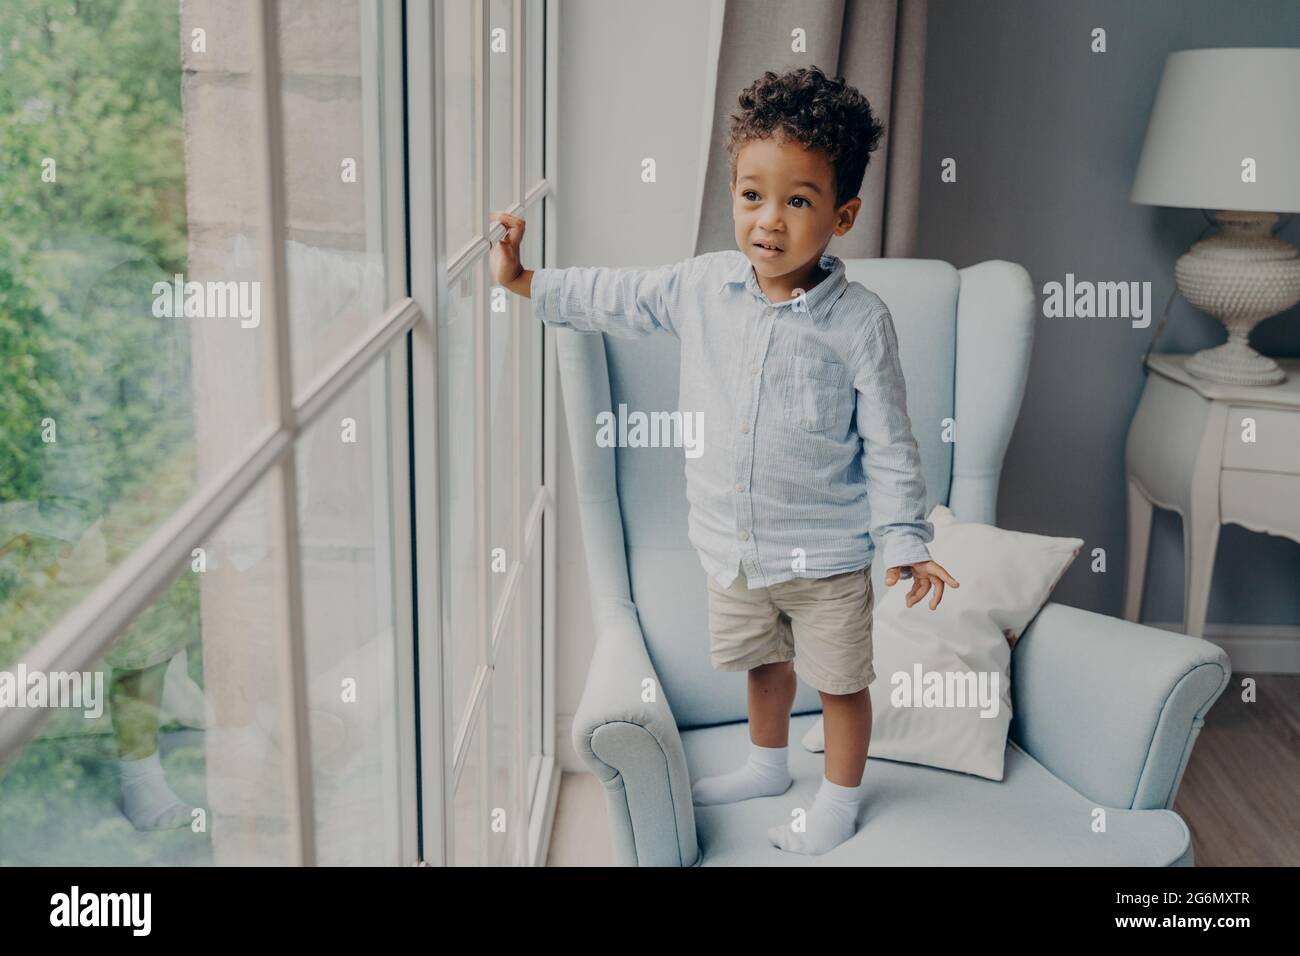 Neugieriger kleiner afroamerikanischer Junge, der durch das Fenster schaut, während er zu Hause auf einem Sessel steht Stockfoto